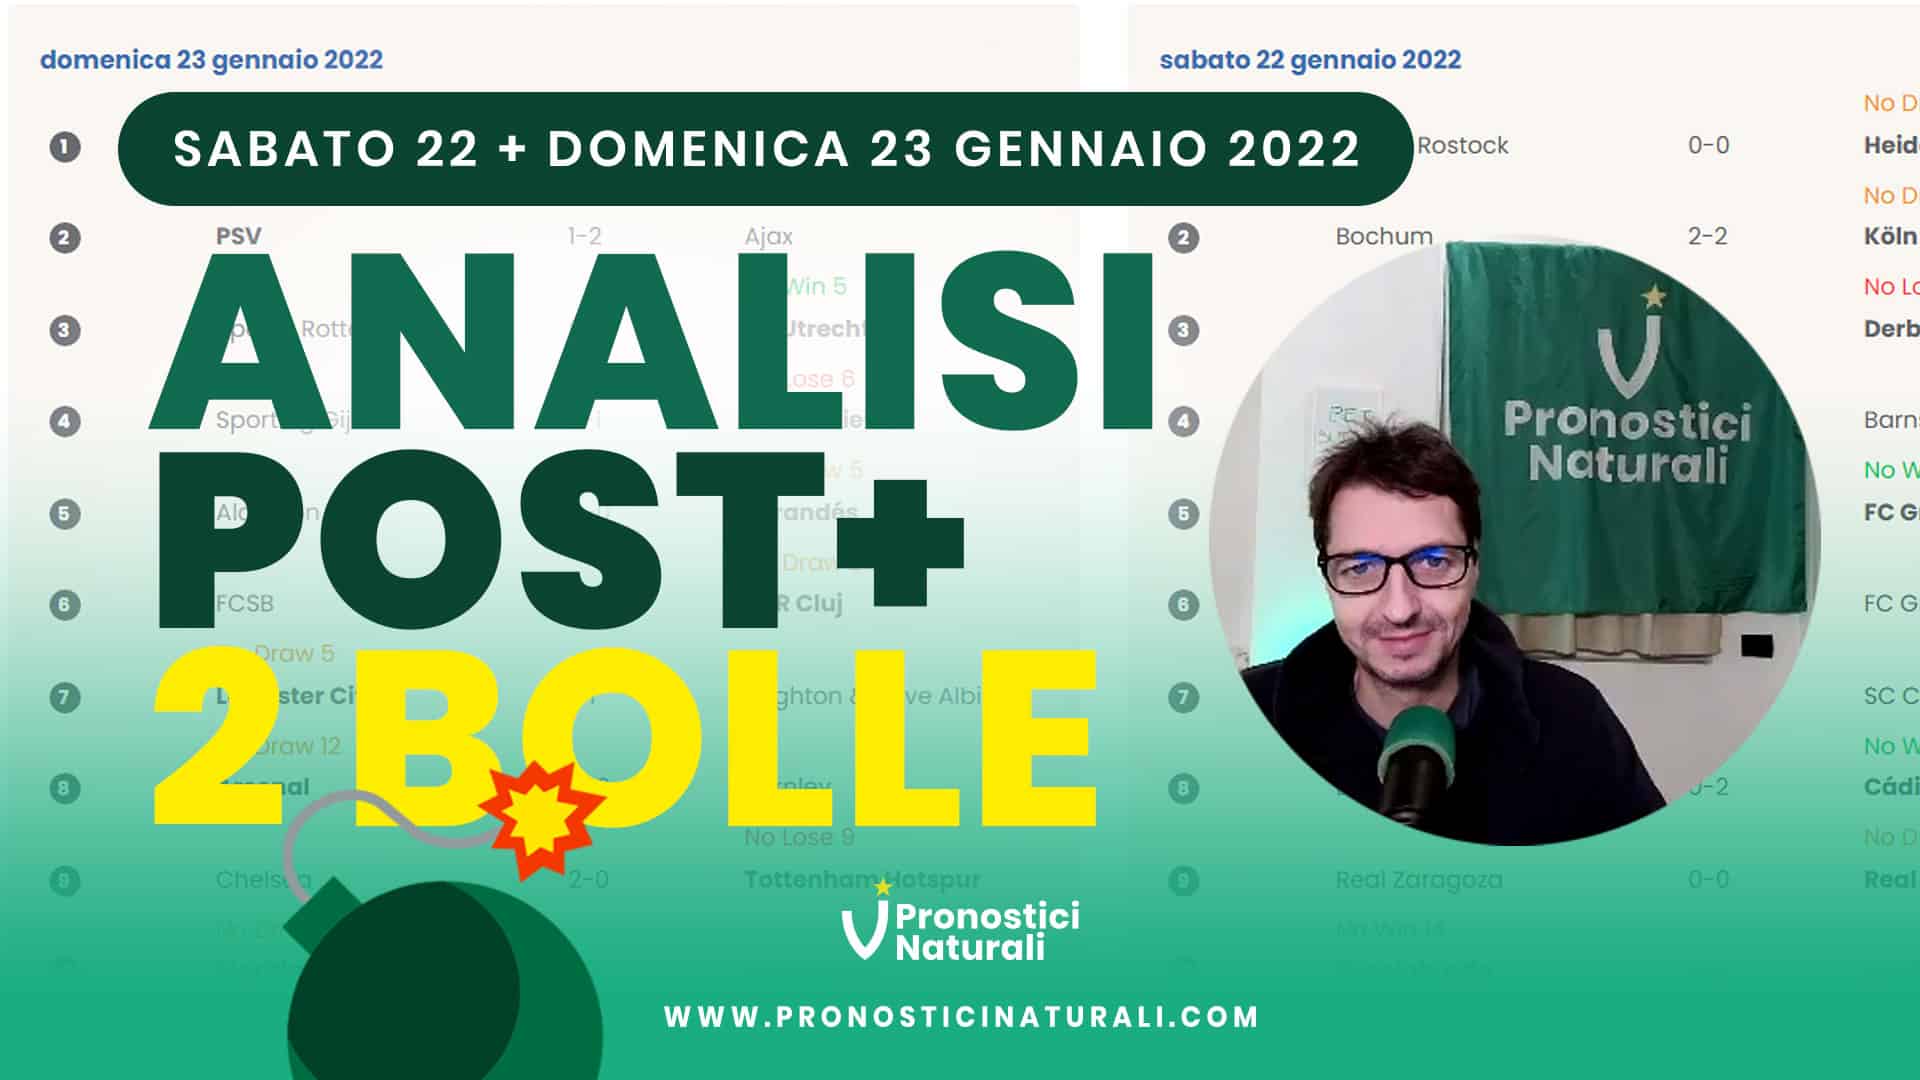 Pronostici Naturali Video Analisi Scommesse Betting Calcio Analisi Post Partite Sabato 22 Domenica 23 Gennaio 2022